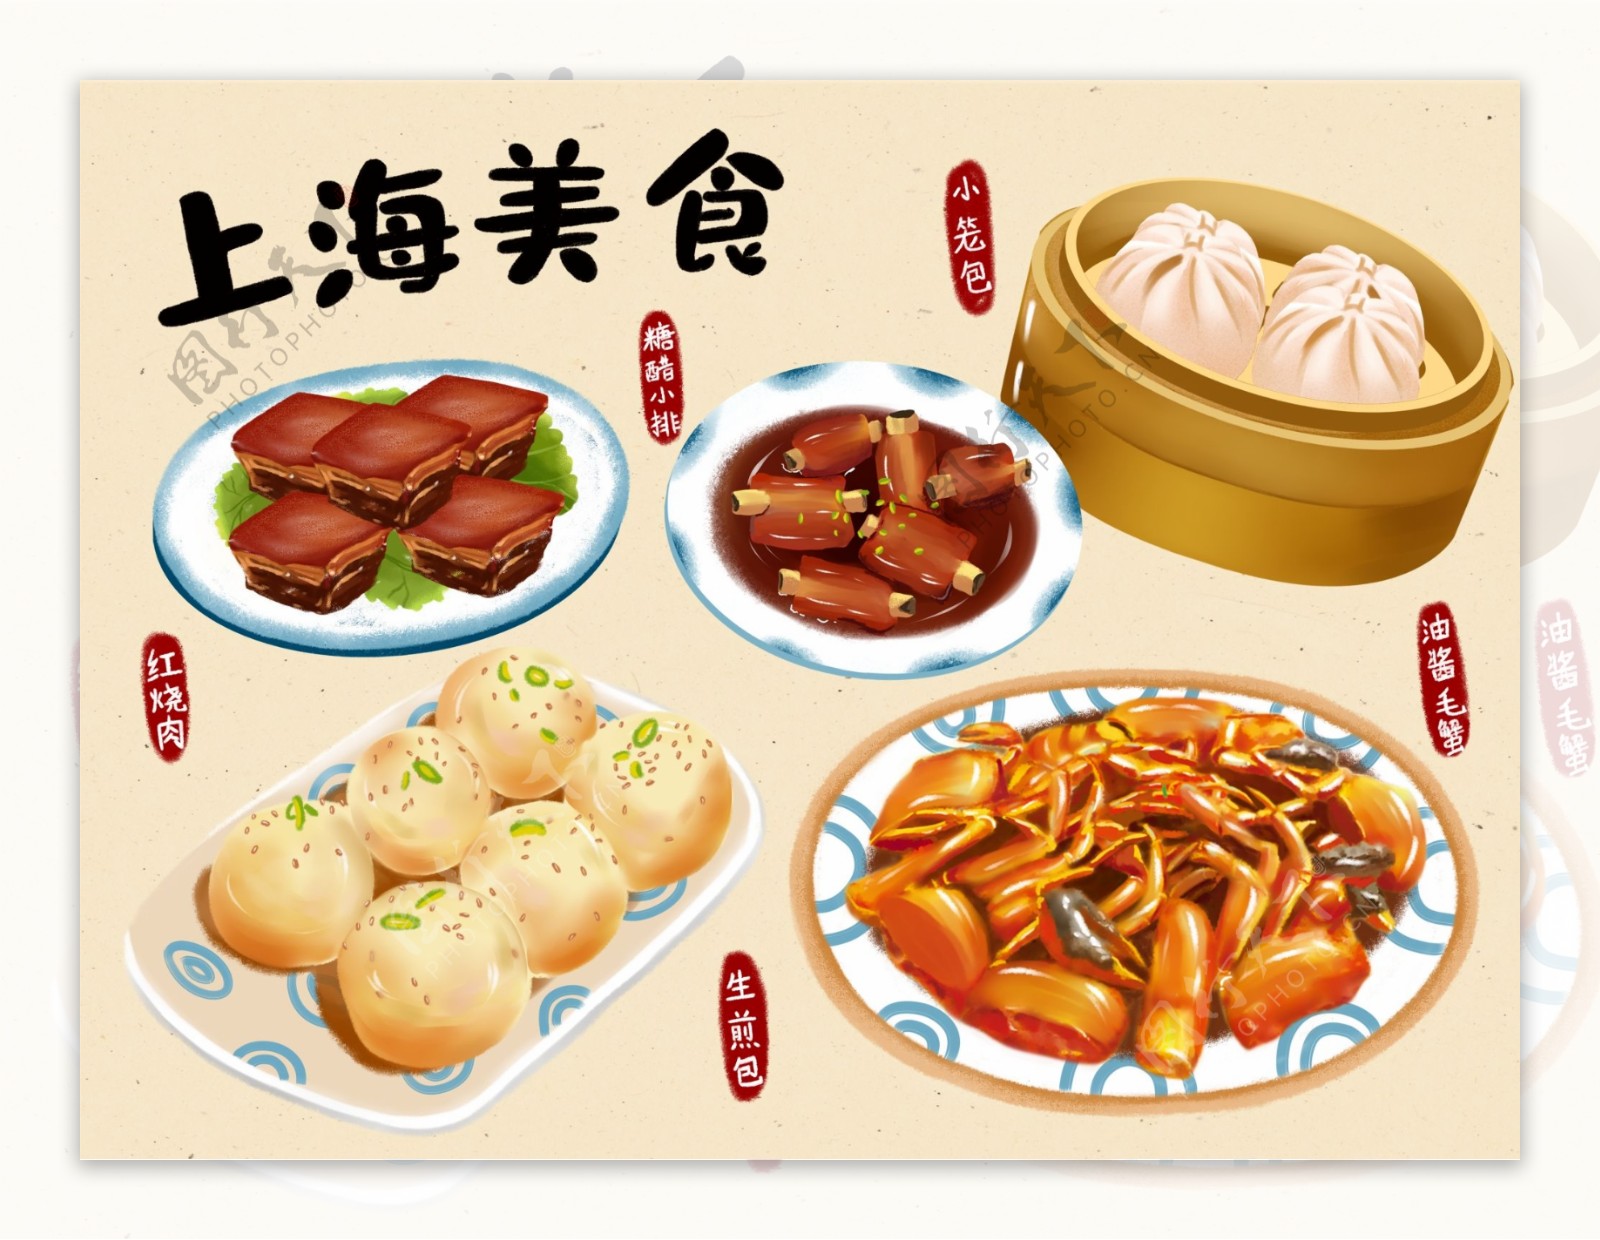 上海美食手绘海报